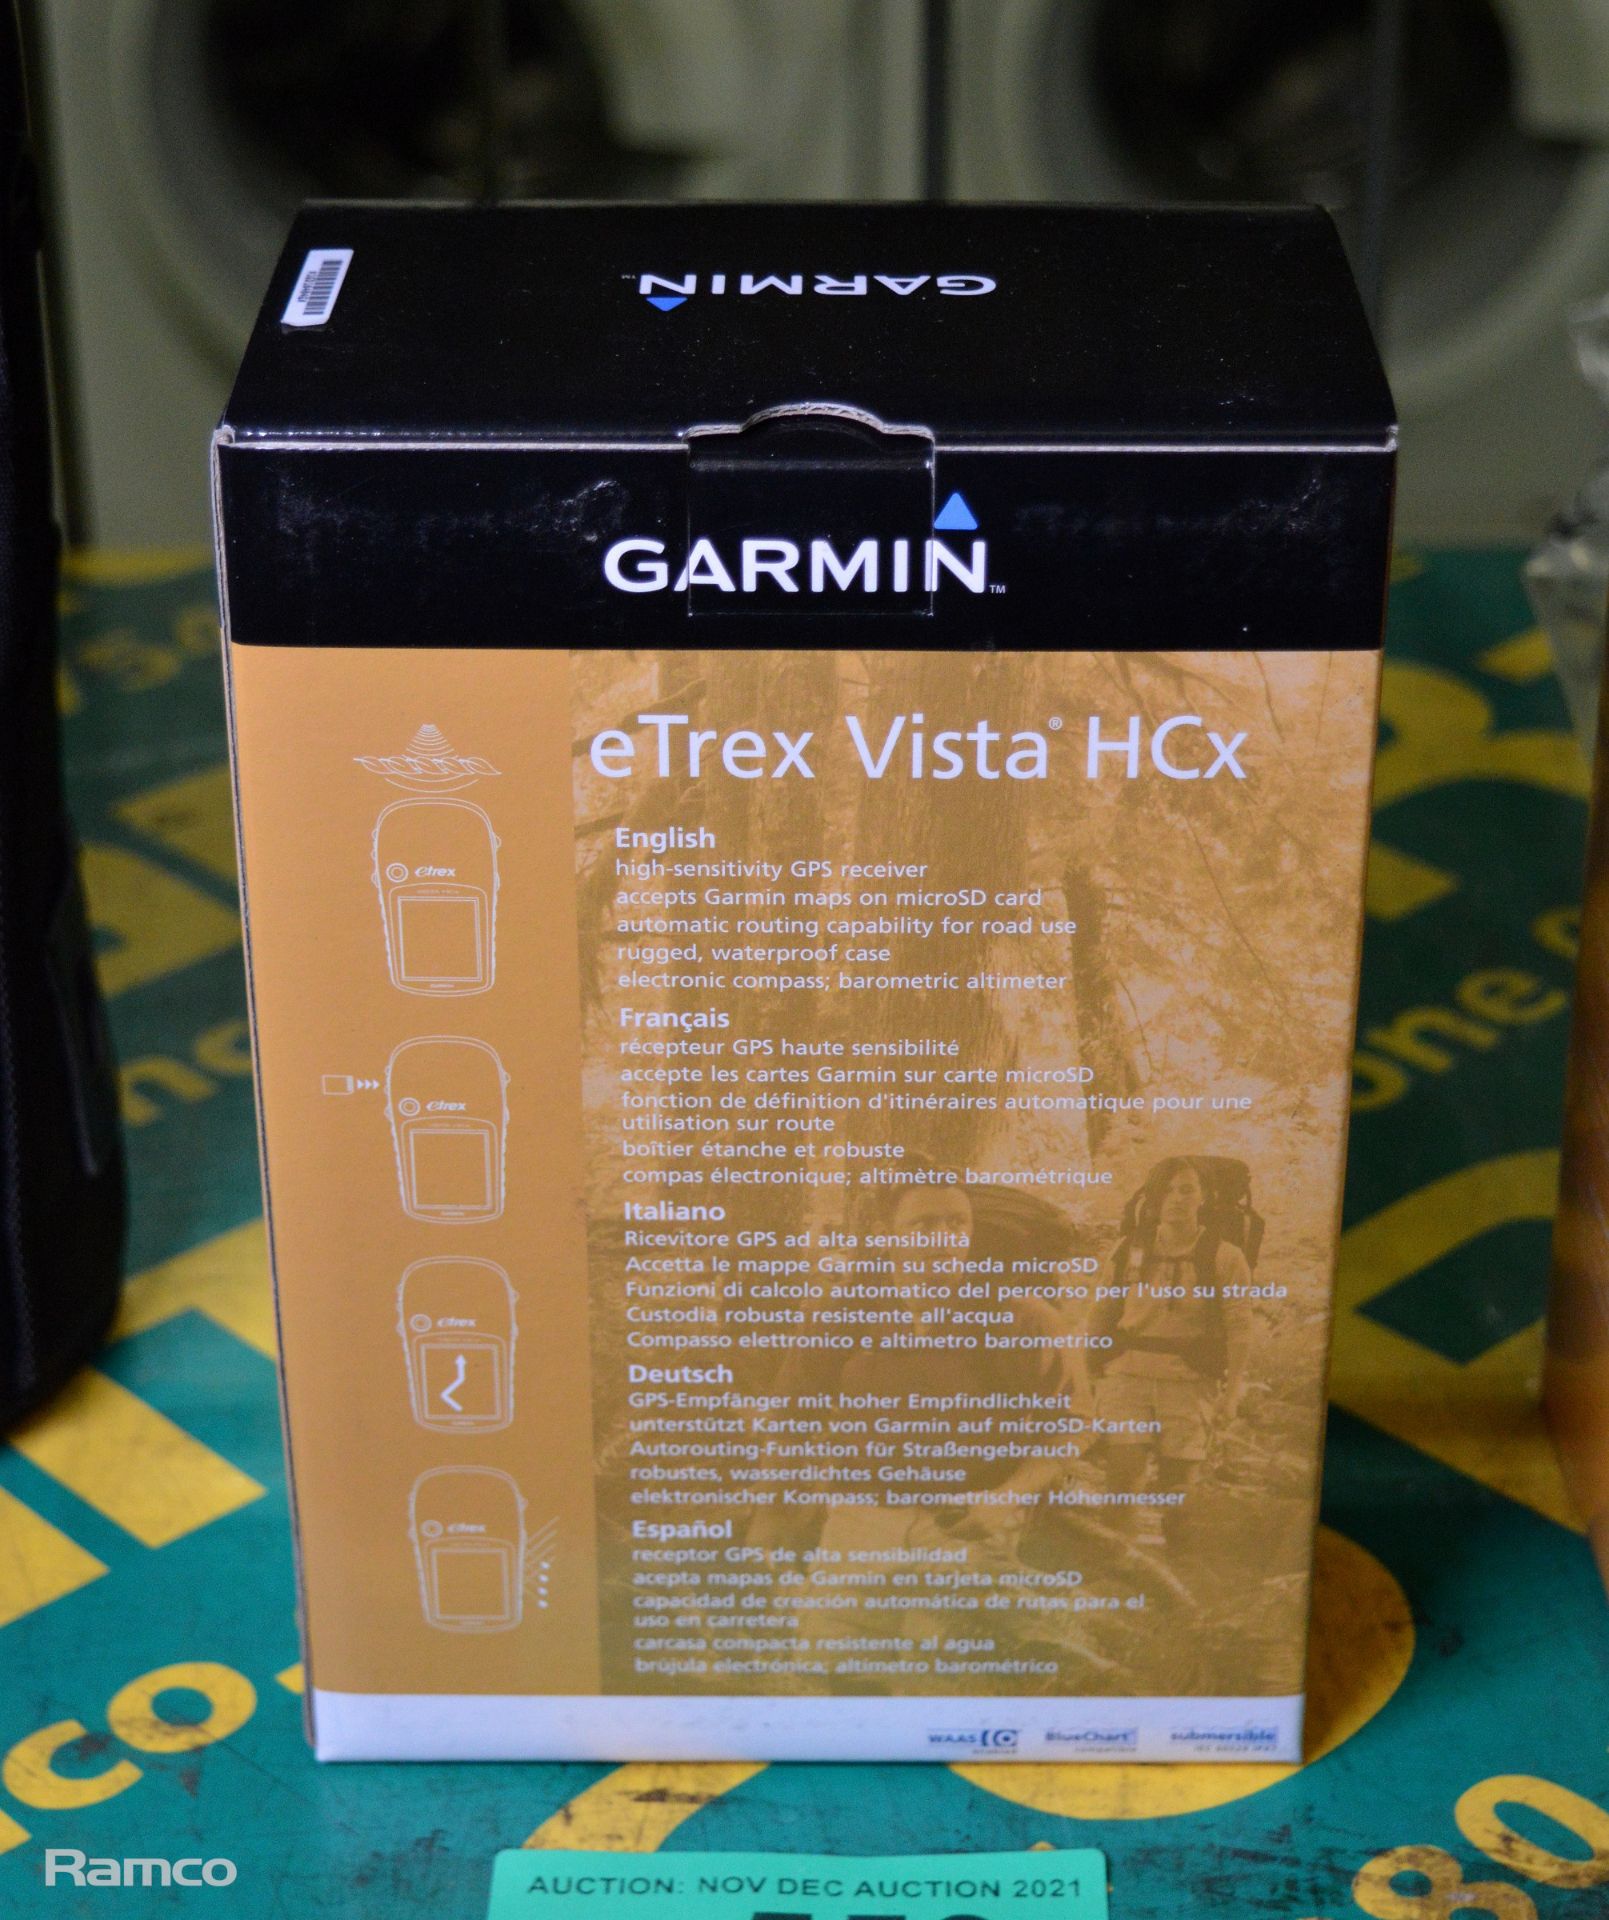 Garmin eTrex Vista HCx Handheld GPS Navigator - Image 2 of 5